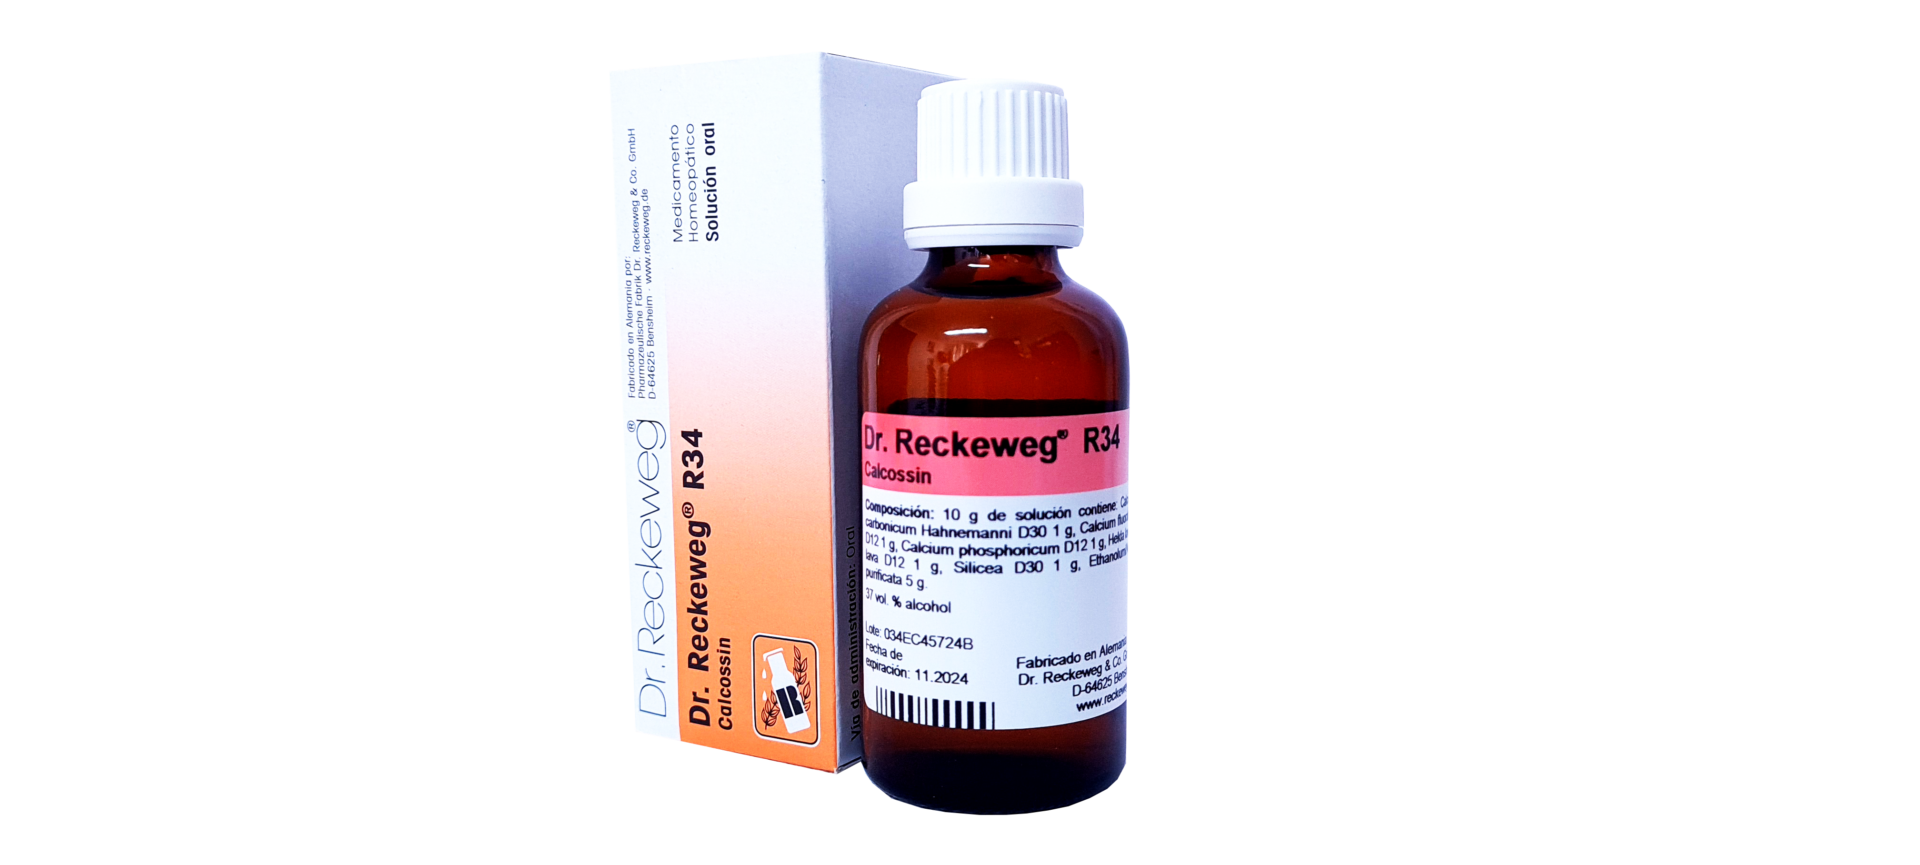 SALUD Y MEDICAMENTOS R41 FORTIVIRONE X 50 ML (Dr. Reckeweg) RECKEWEG